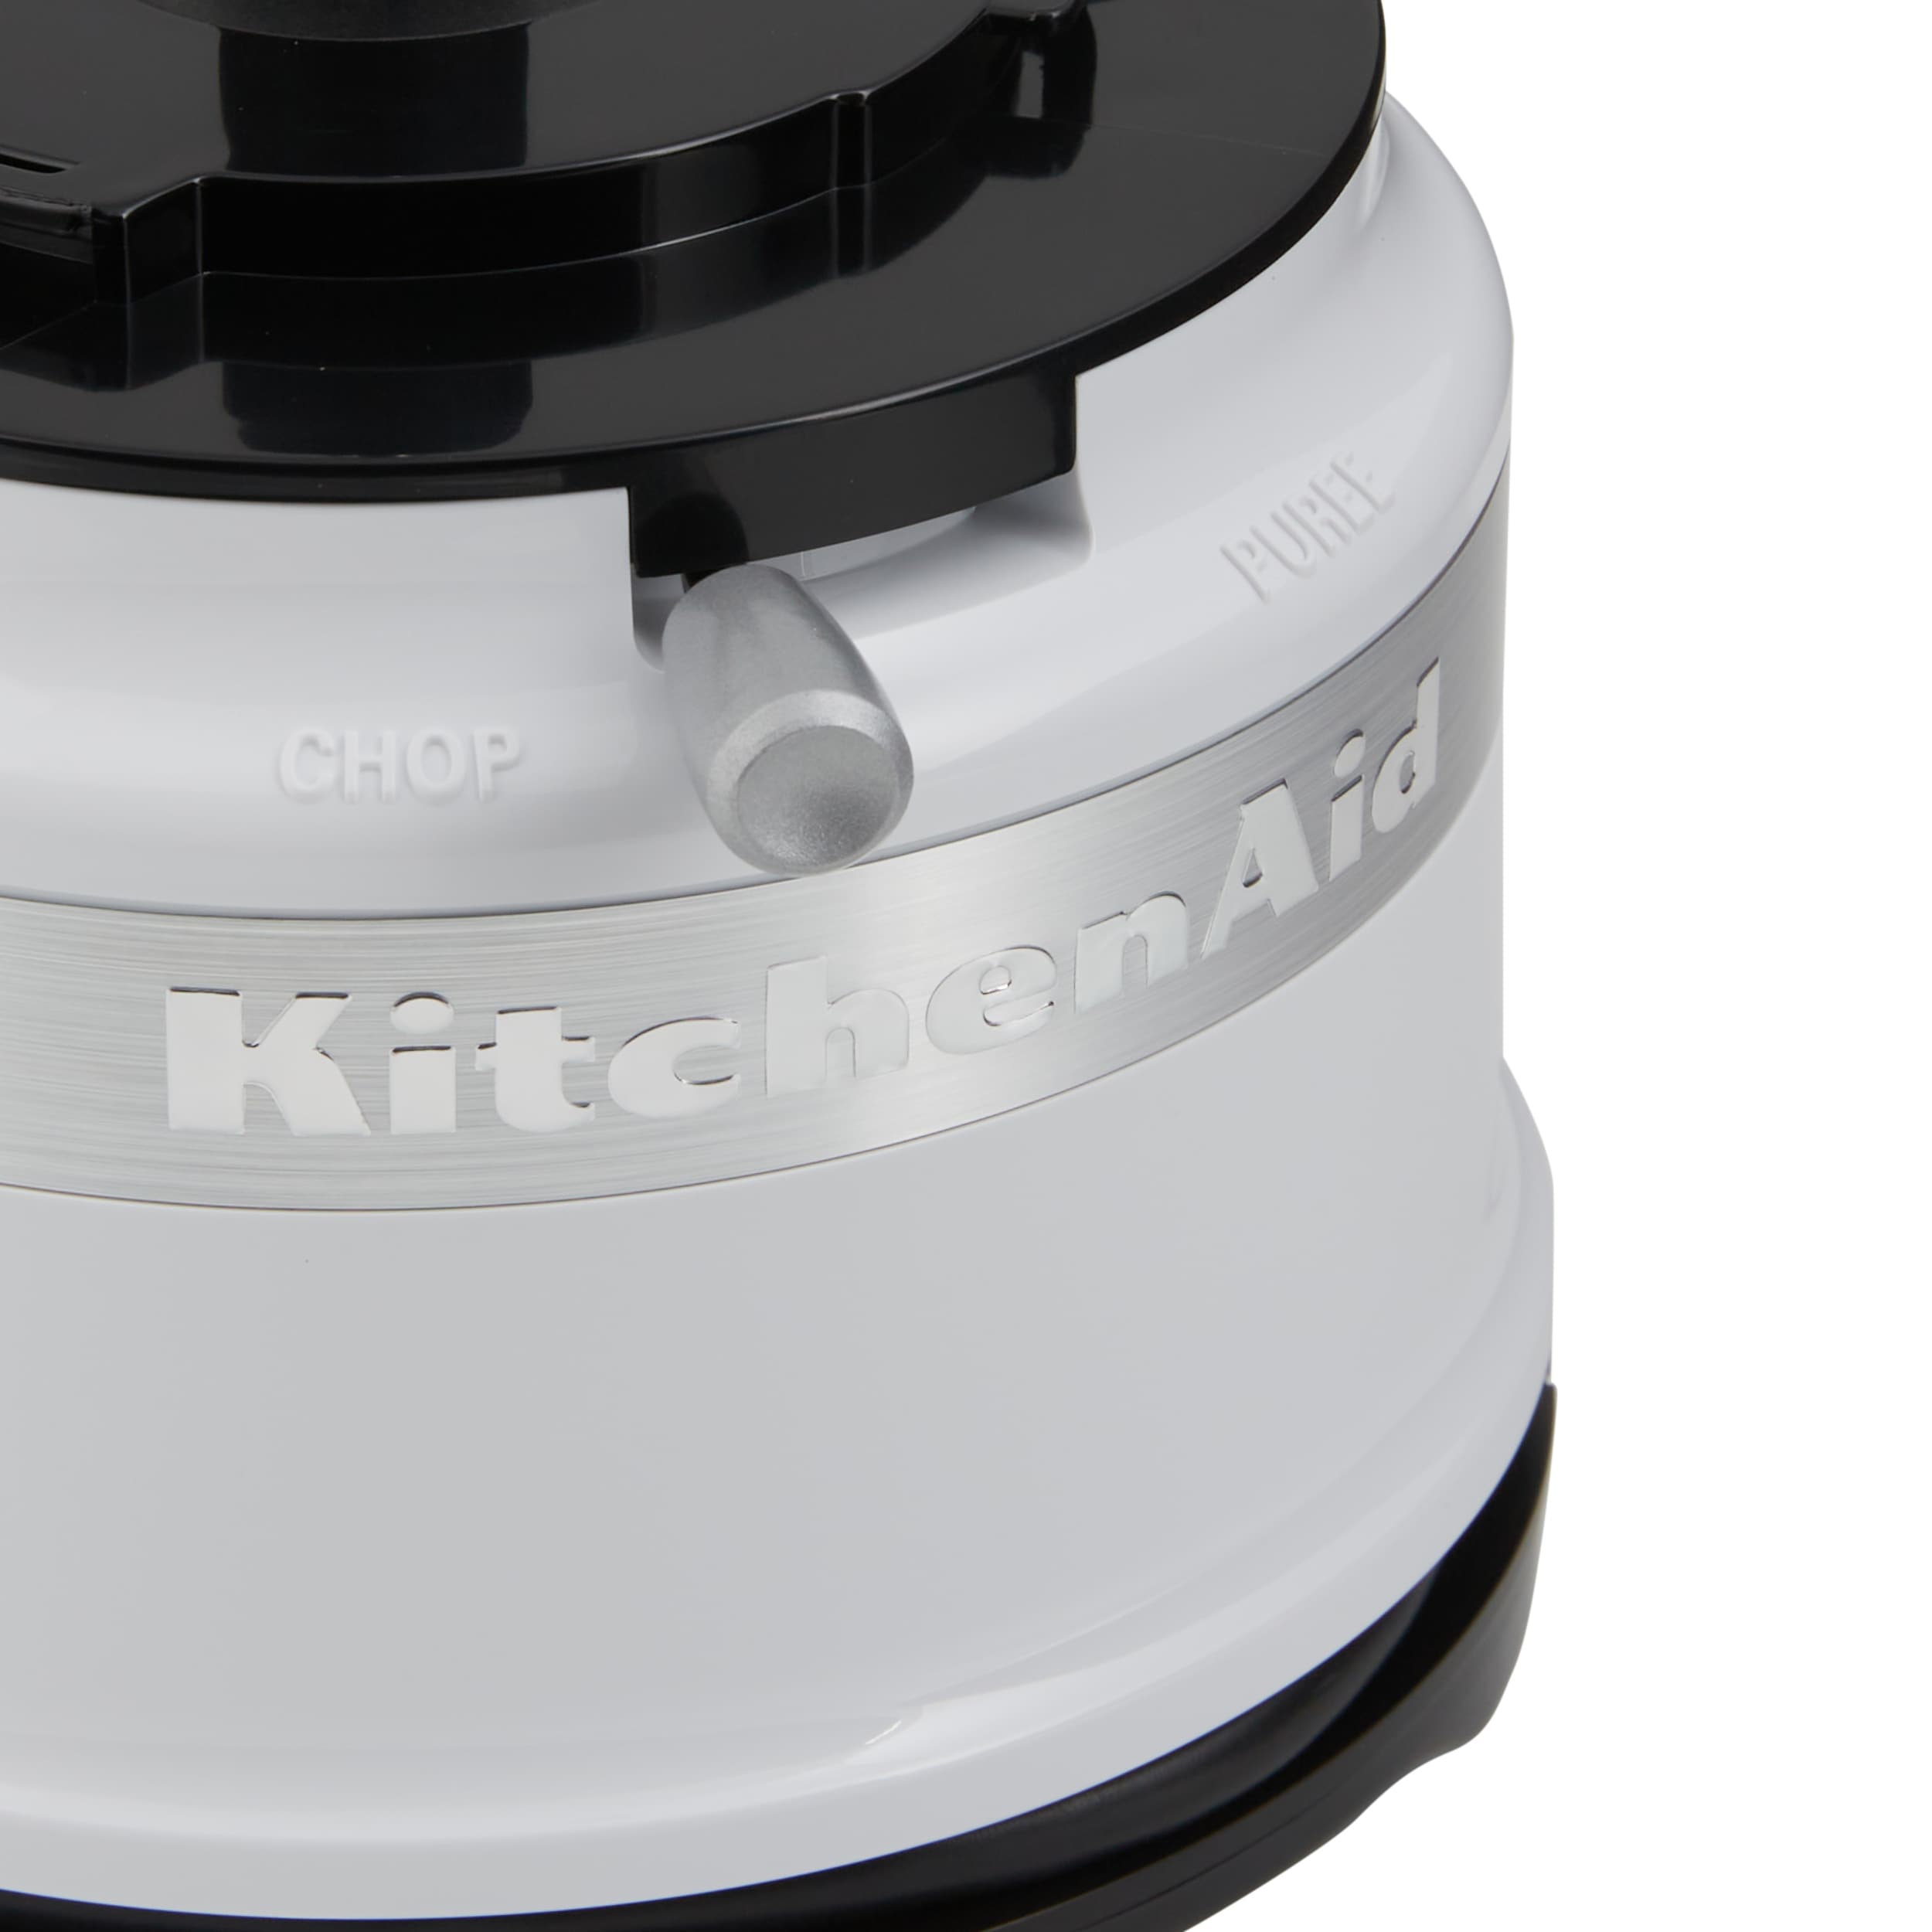 KitchenAid KFC3516WH 3.5 Cup Mini Food Processor - White